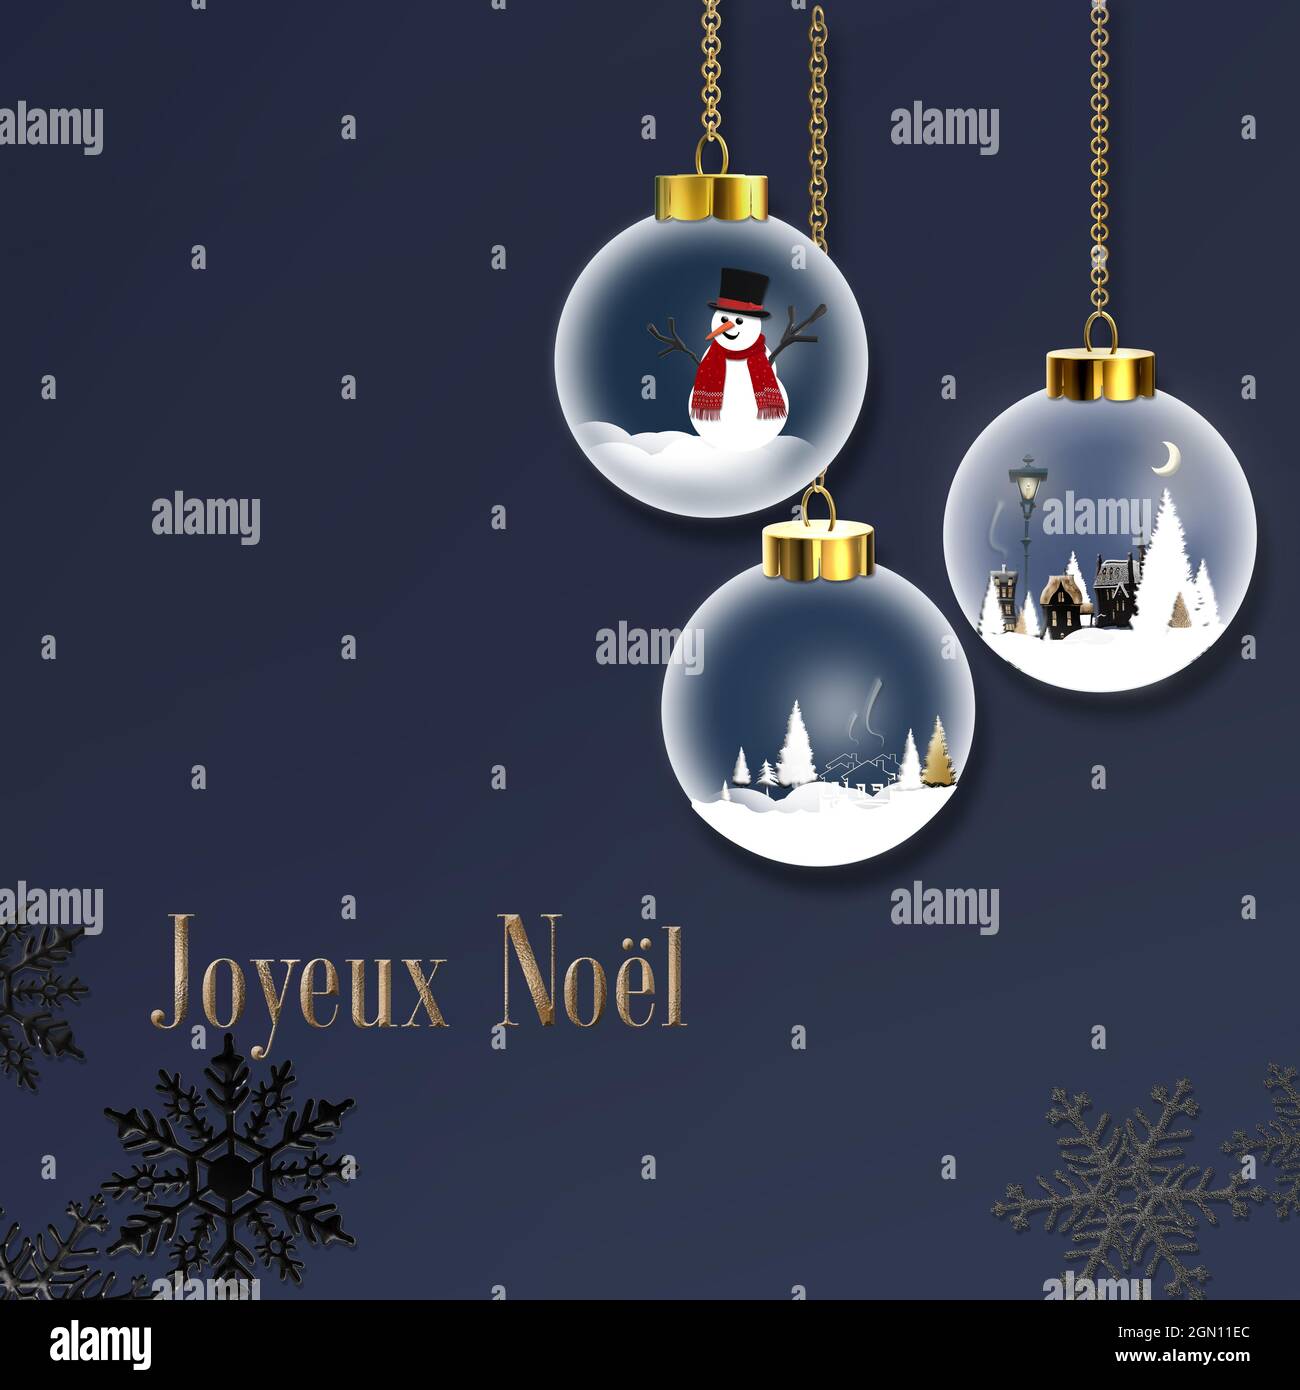 Französischer Text Joyeux Noel, Frohe Weihnachten auf Französisch.  Weihnachtskarte mit Weihnachtsschneeball, Schneemann, Schneeflocken,  Weihnachtsbaum Äste über blau. Platz für t Stockfotografie - Alamy